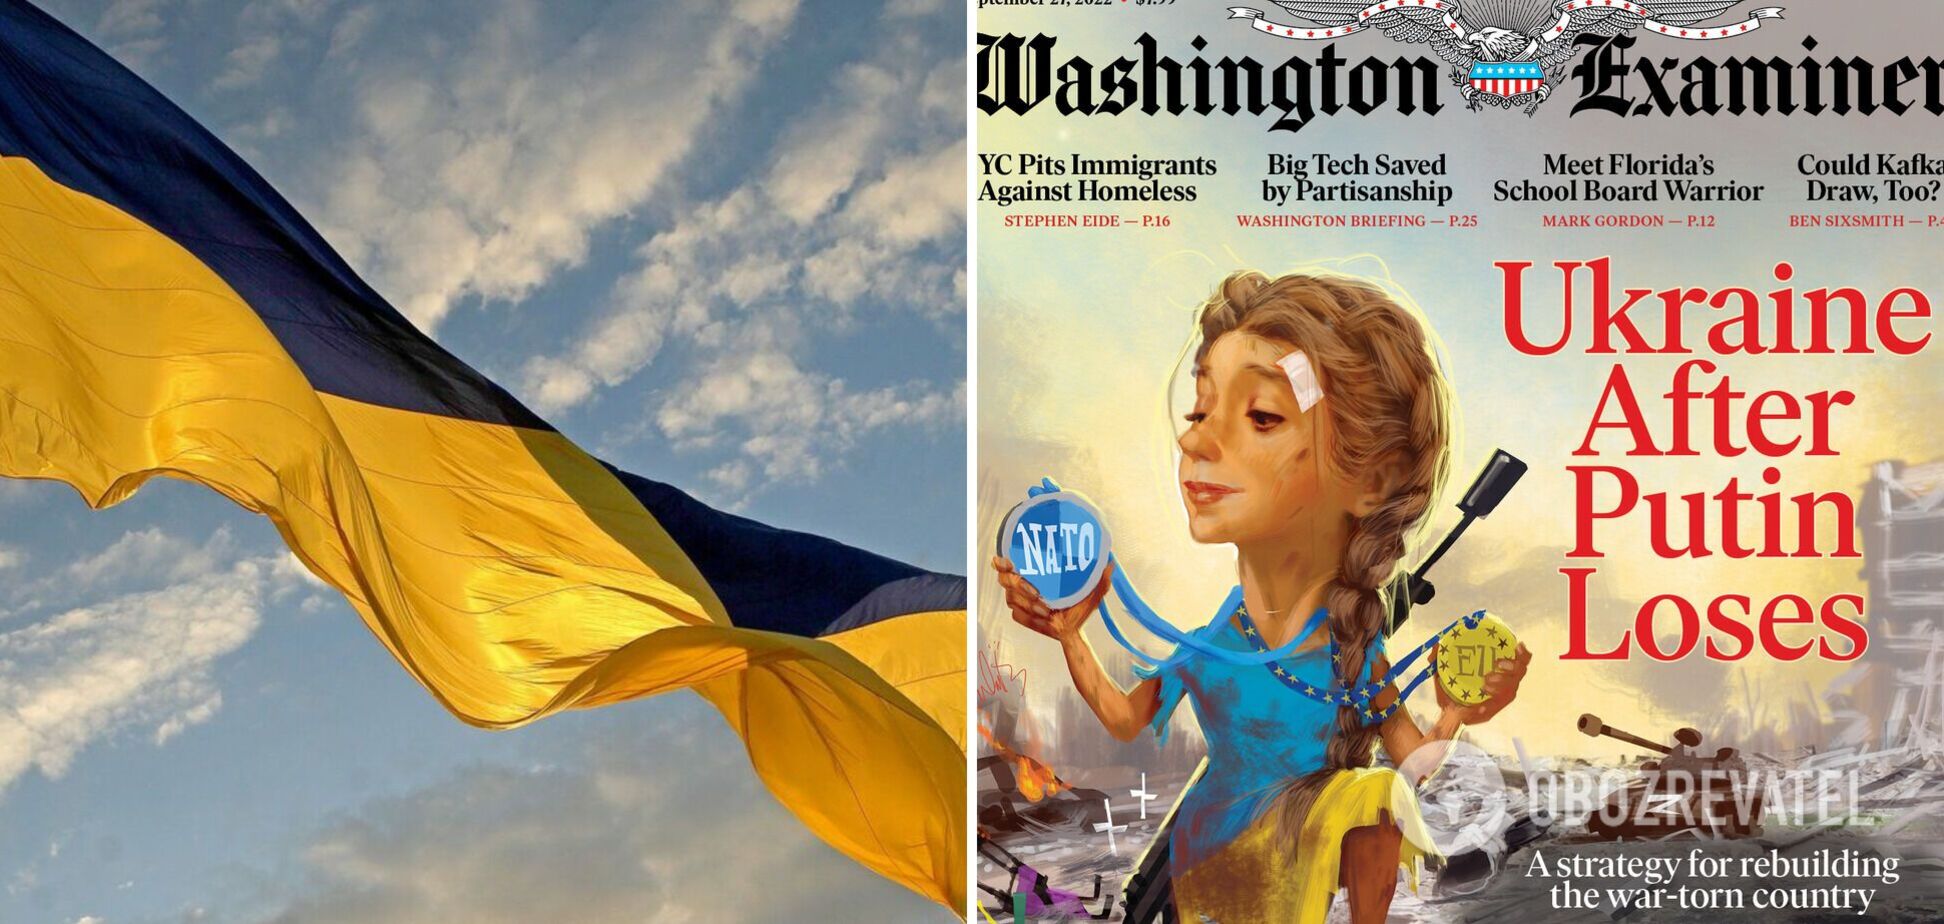 В НАТО и в ЕС: журнал Washington Examiner разместил на своей обложке 'Украину без Путина'